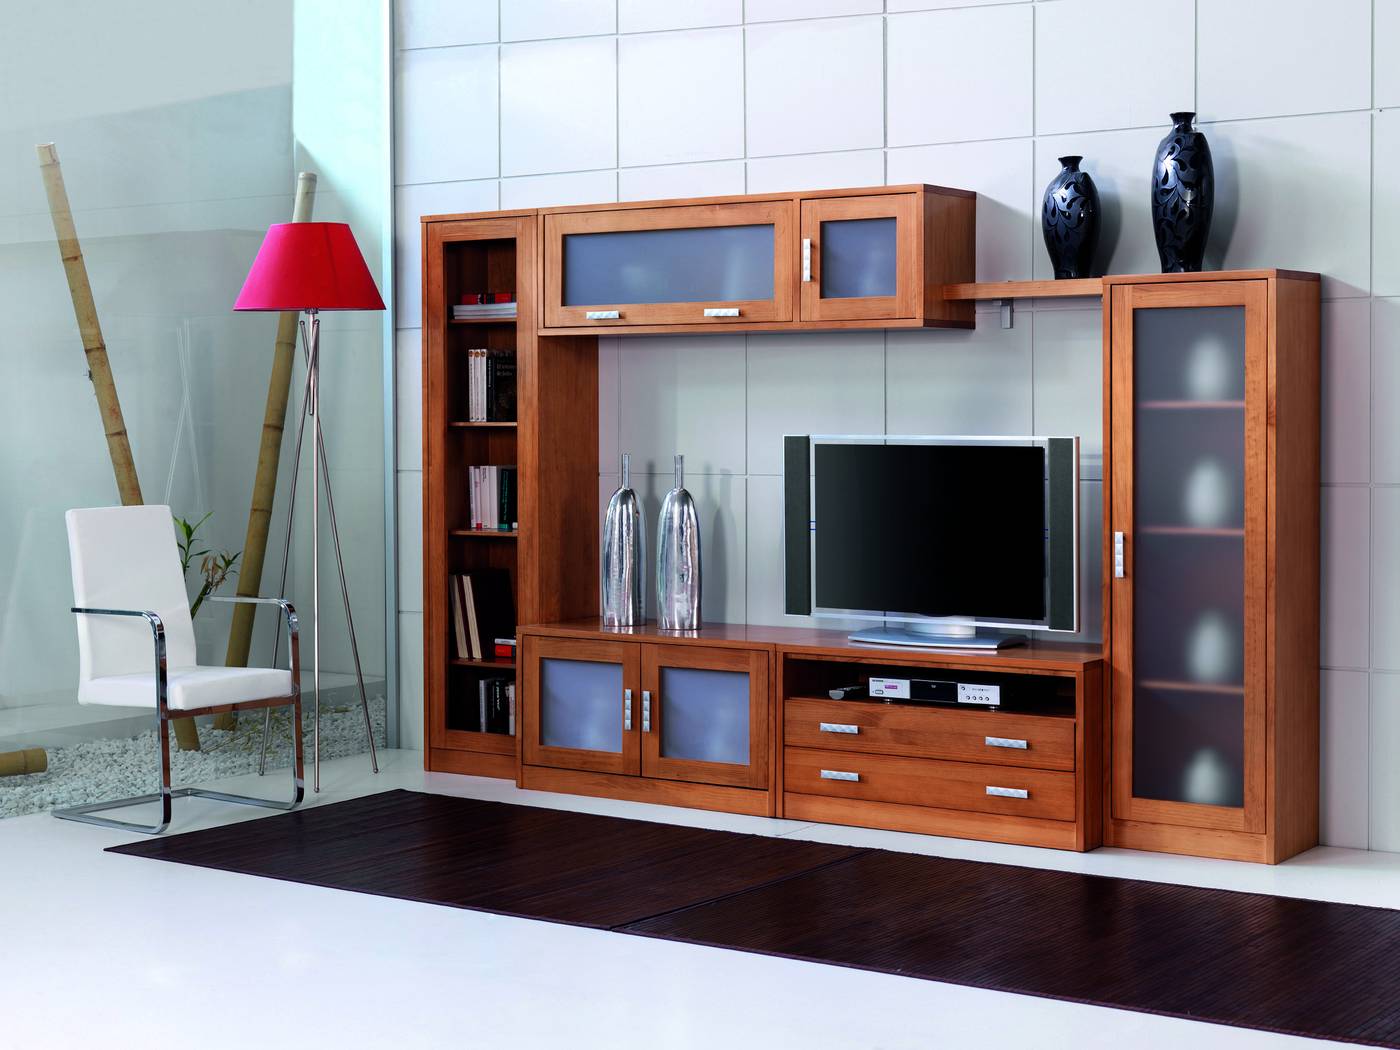 Modular Comedor C-4 - Composición de madera de pino: librero + módulo bar + módulo bajo + módulo TV + estante + vitrina